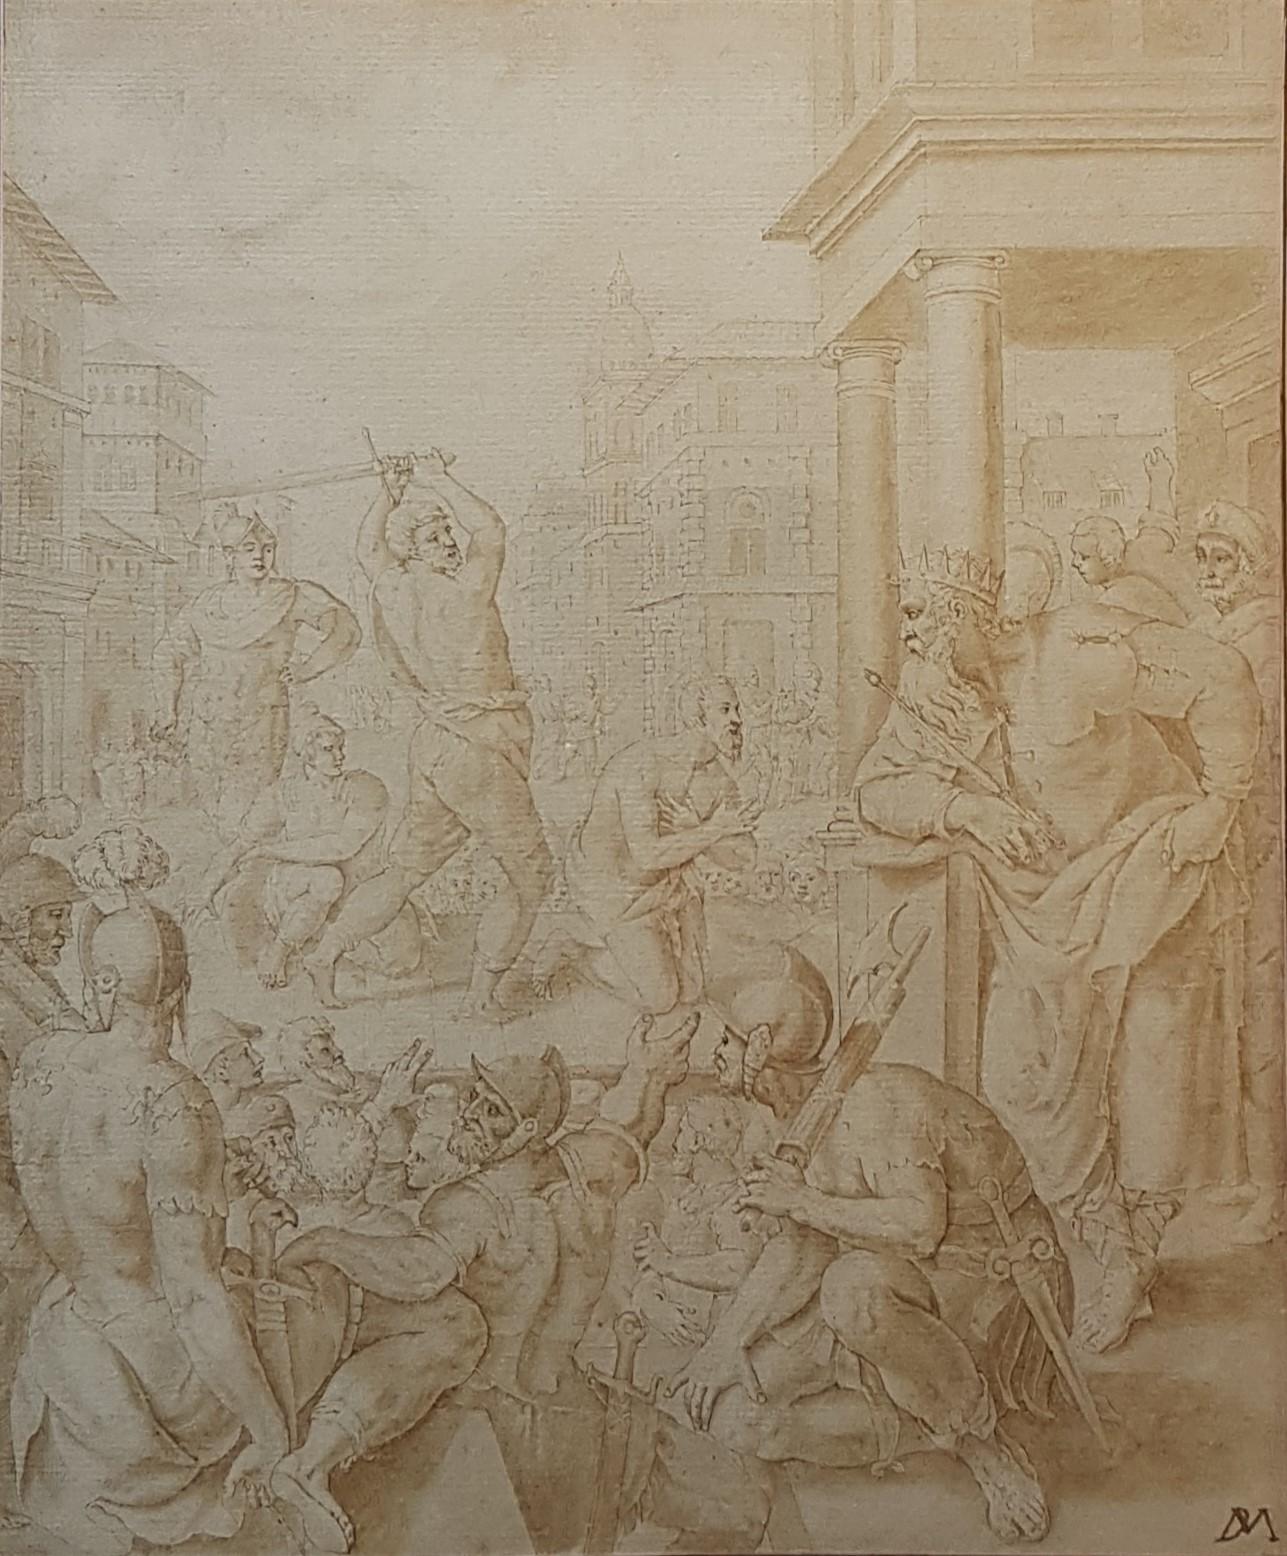 Zeichnungs Tinte 16. 17. Flämisches DE VOS Religiöses Martyrdom von James dem Großen – Art von Marteen De Vos